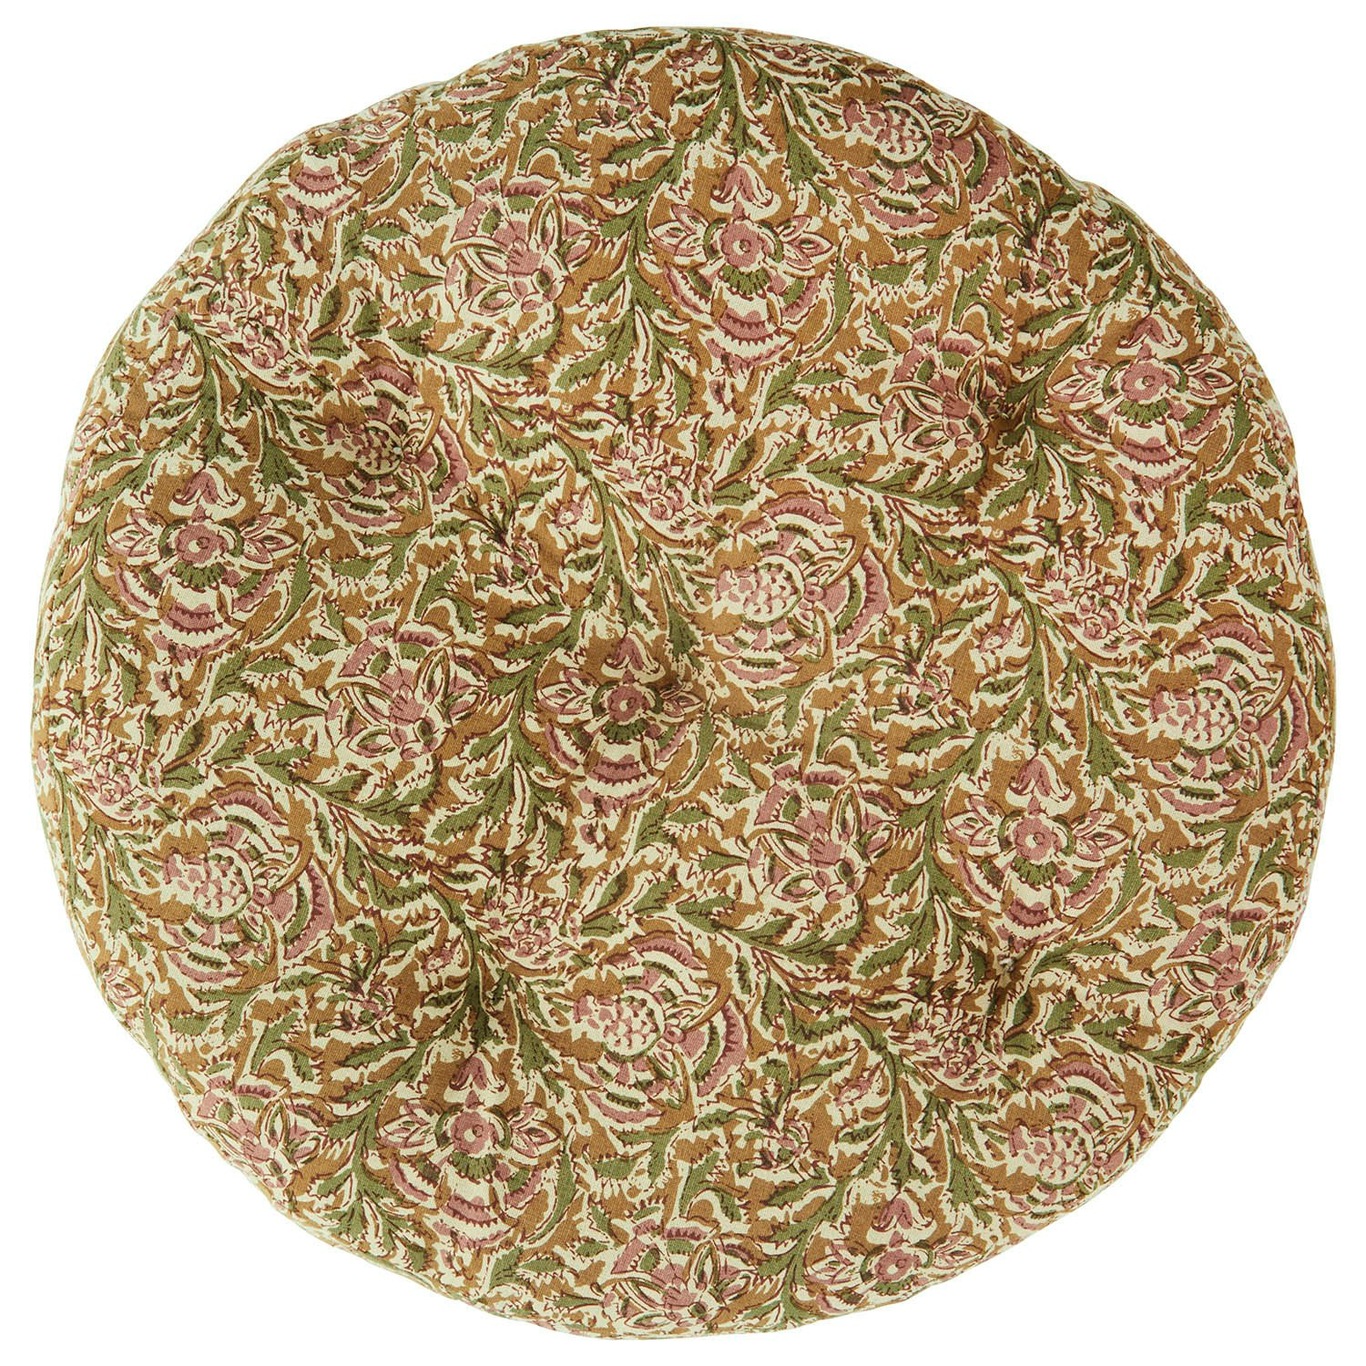 Rundes Sitzpolster 40 cm, Honigfarben/Rosa